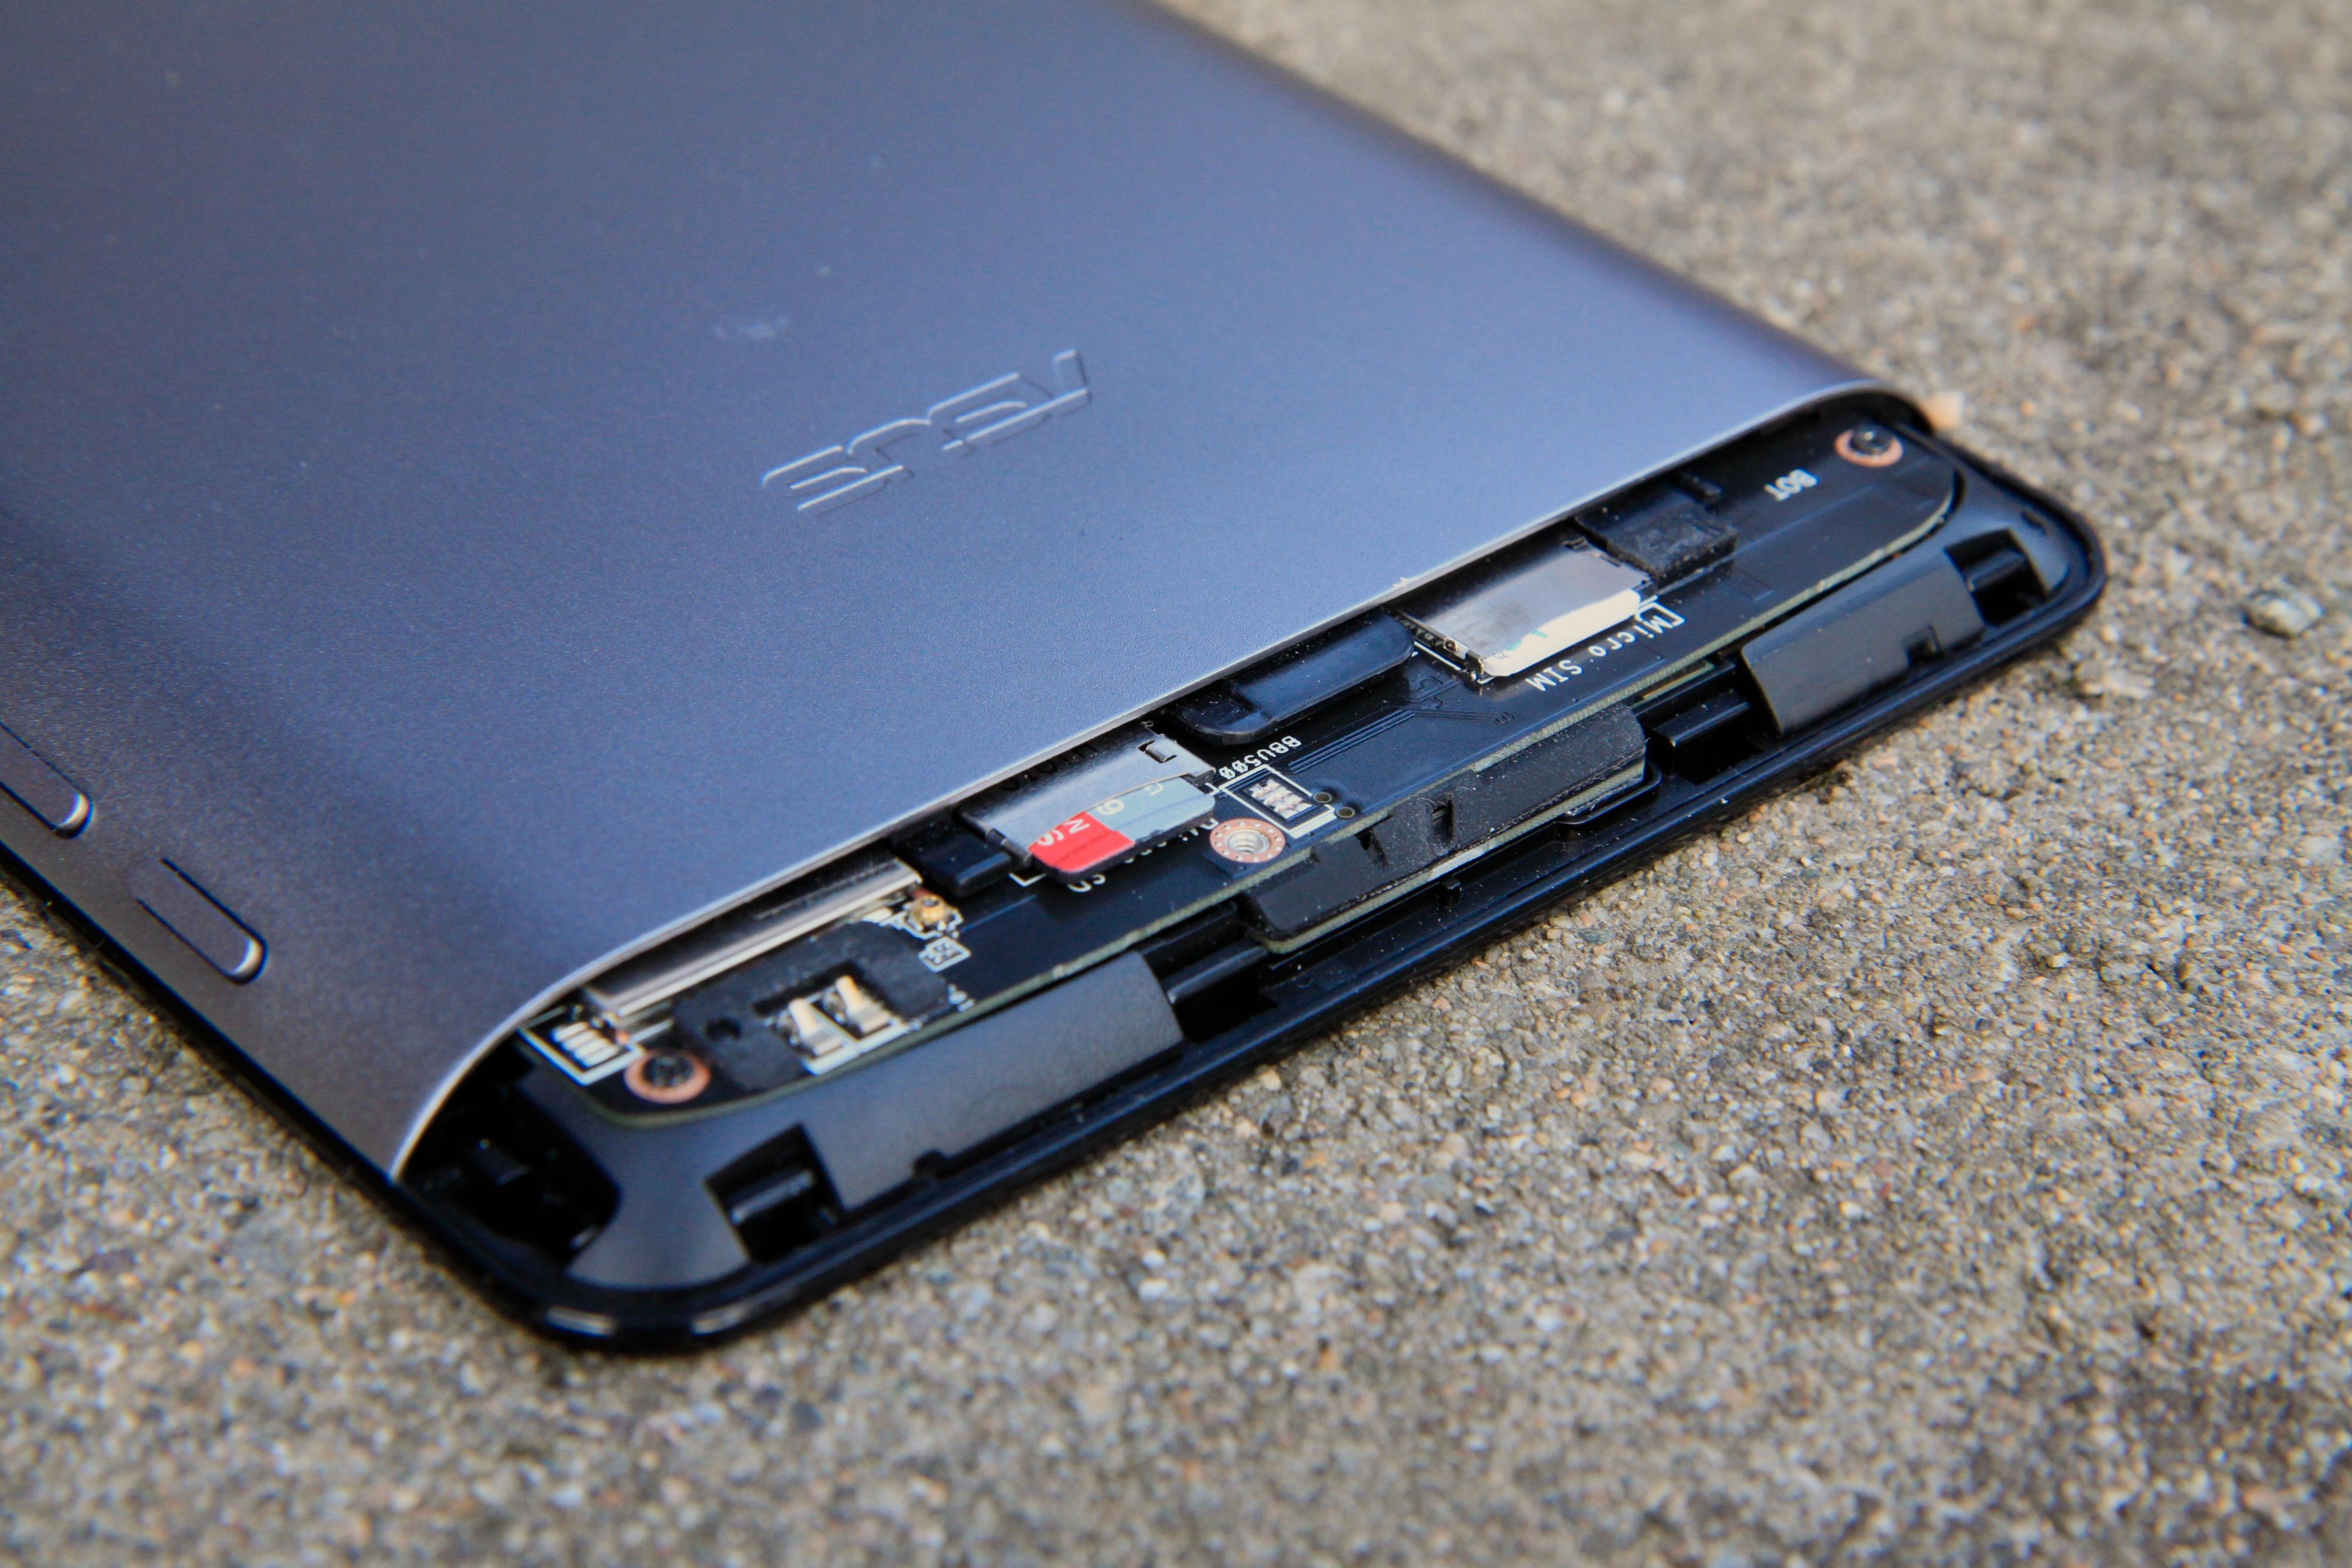 SIM-kort og MicroSD-kort befinner seg under et plastdeksel øverst på baksiden.Foto: Kurt Lekanger, Amobil.no